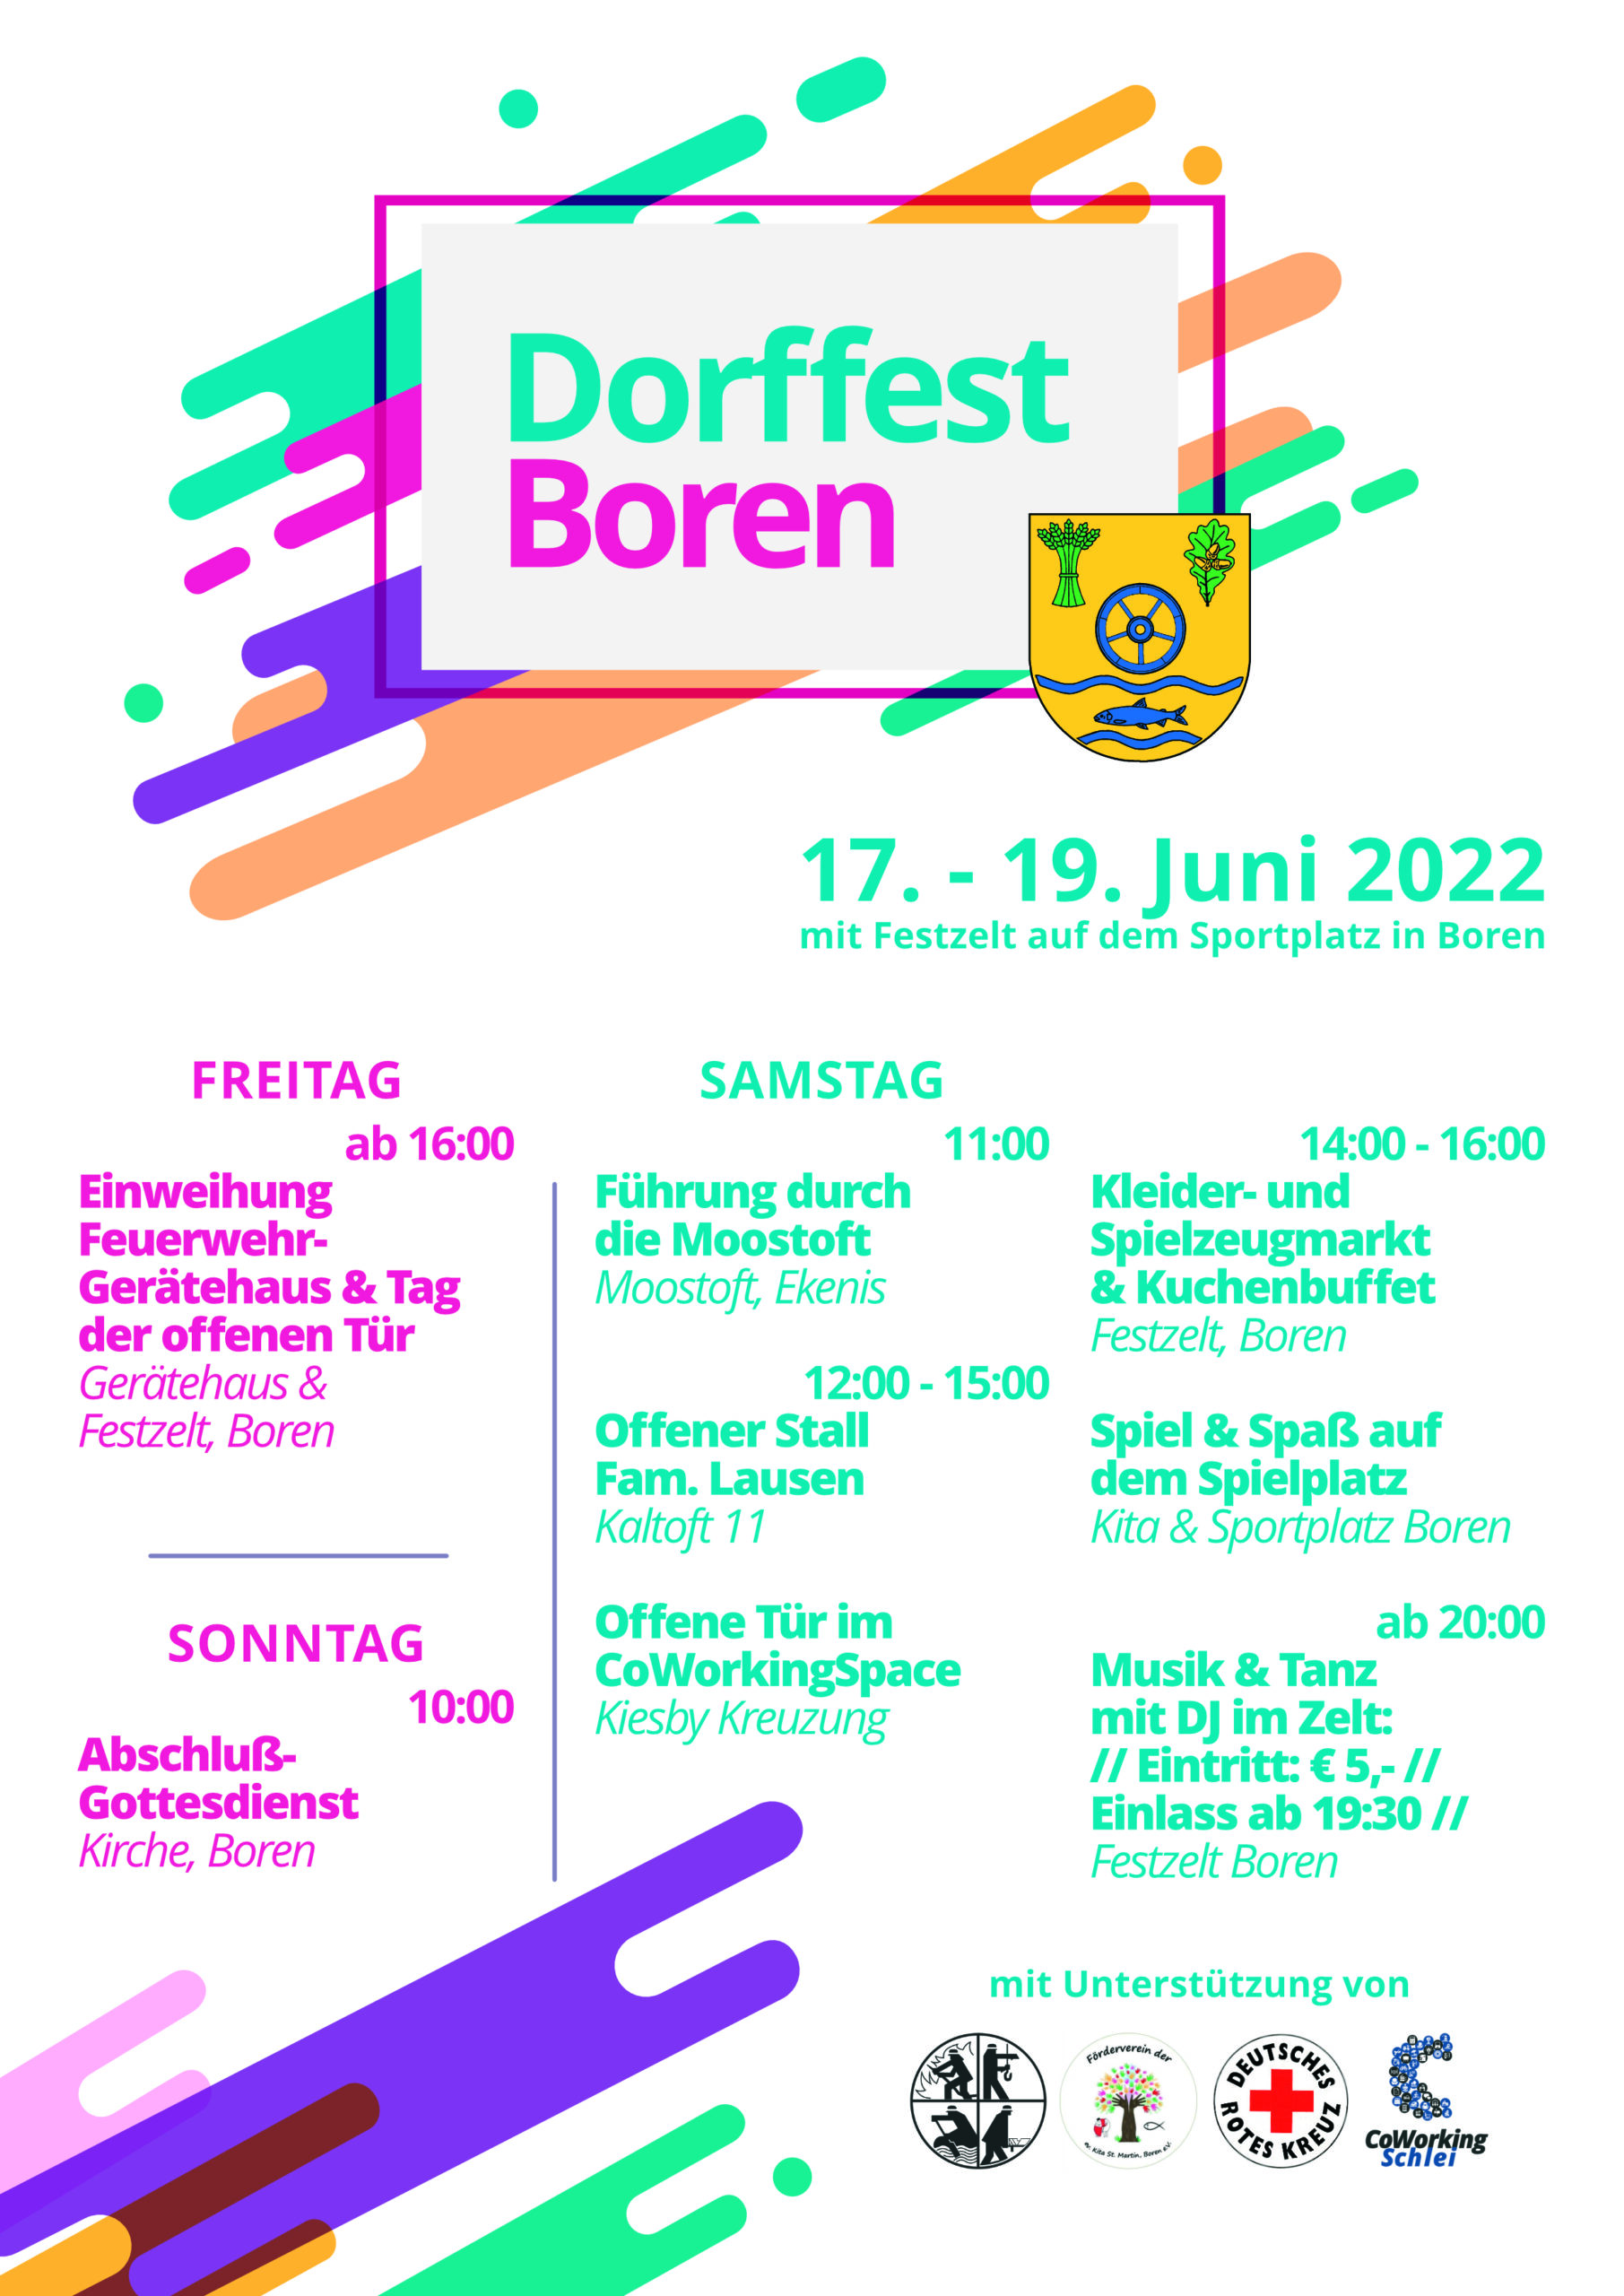 Dorffest Boren: Einweihung Feuerwehr-Gerätehaus & Tag der offenen Tür